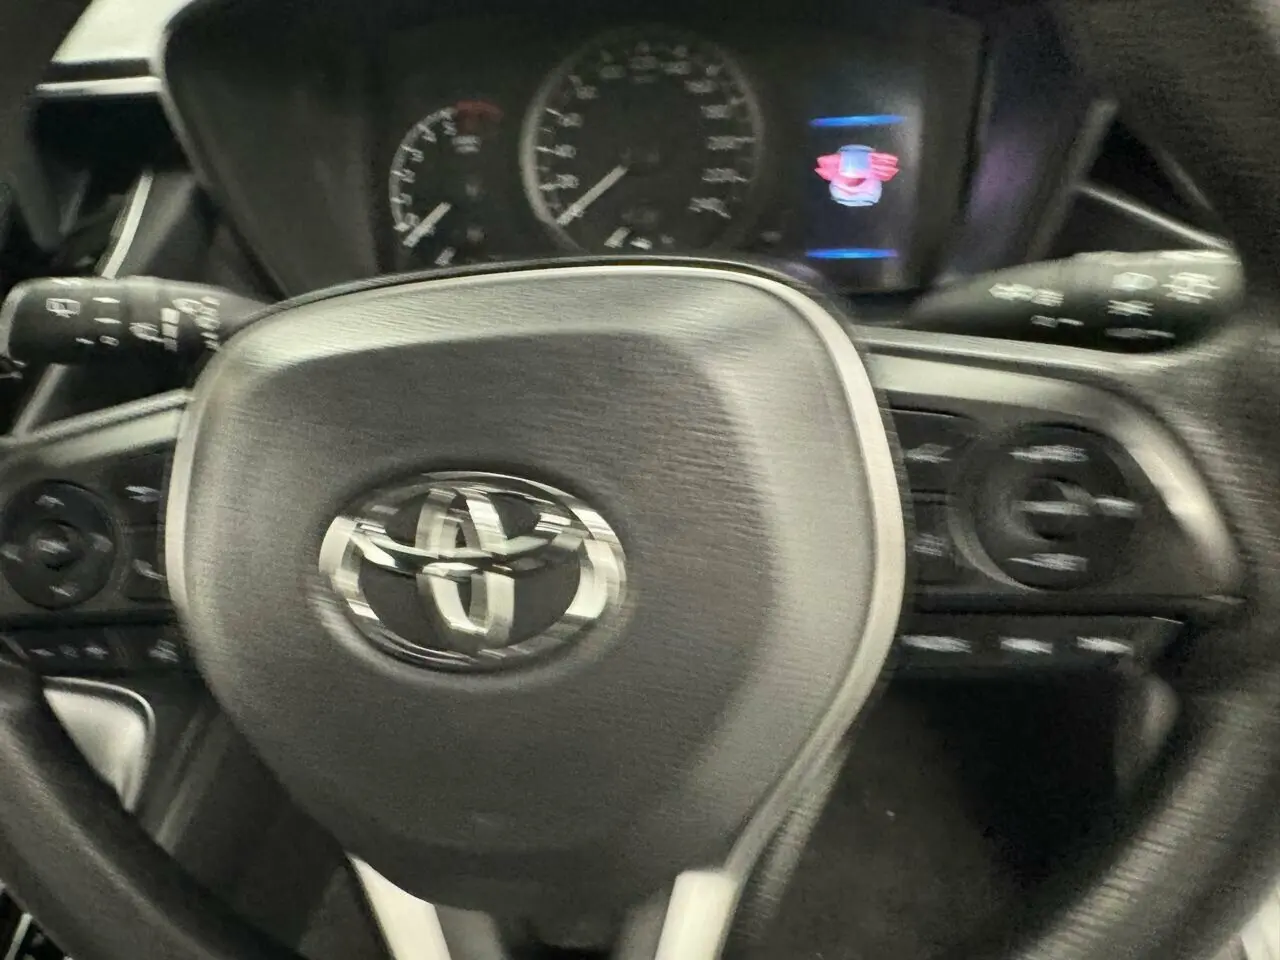 2019 Toyota Corolla Image 17